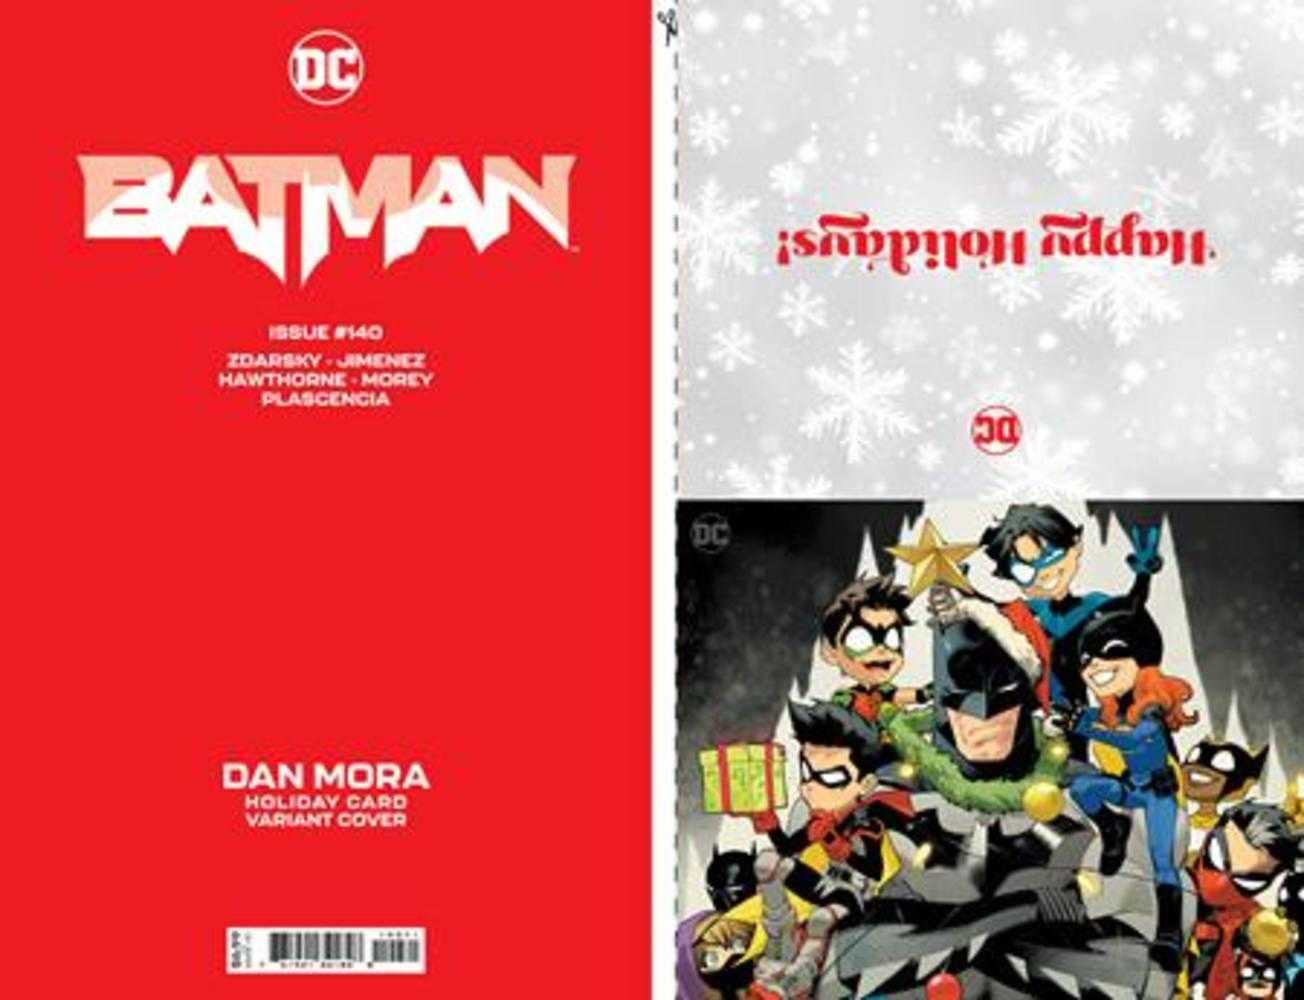 Batman #140 Cover D Dan Mora DC Holiday Card Special Edition Variant